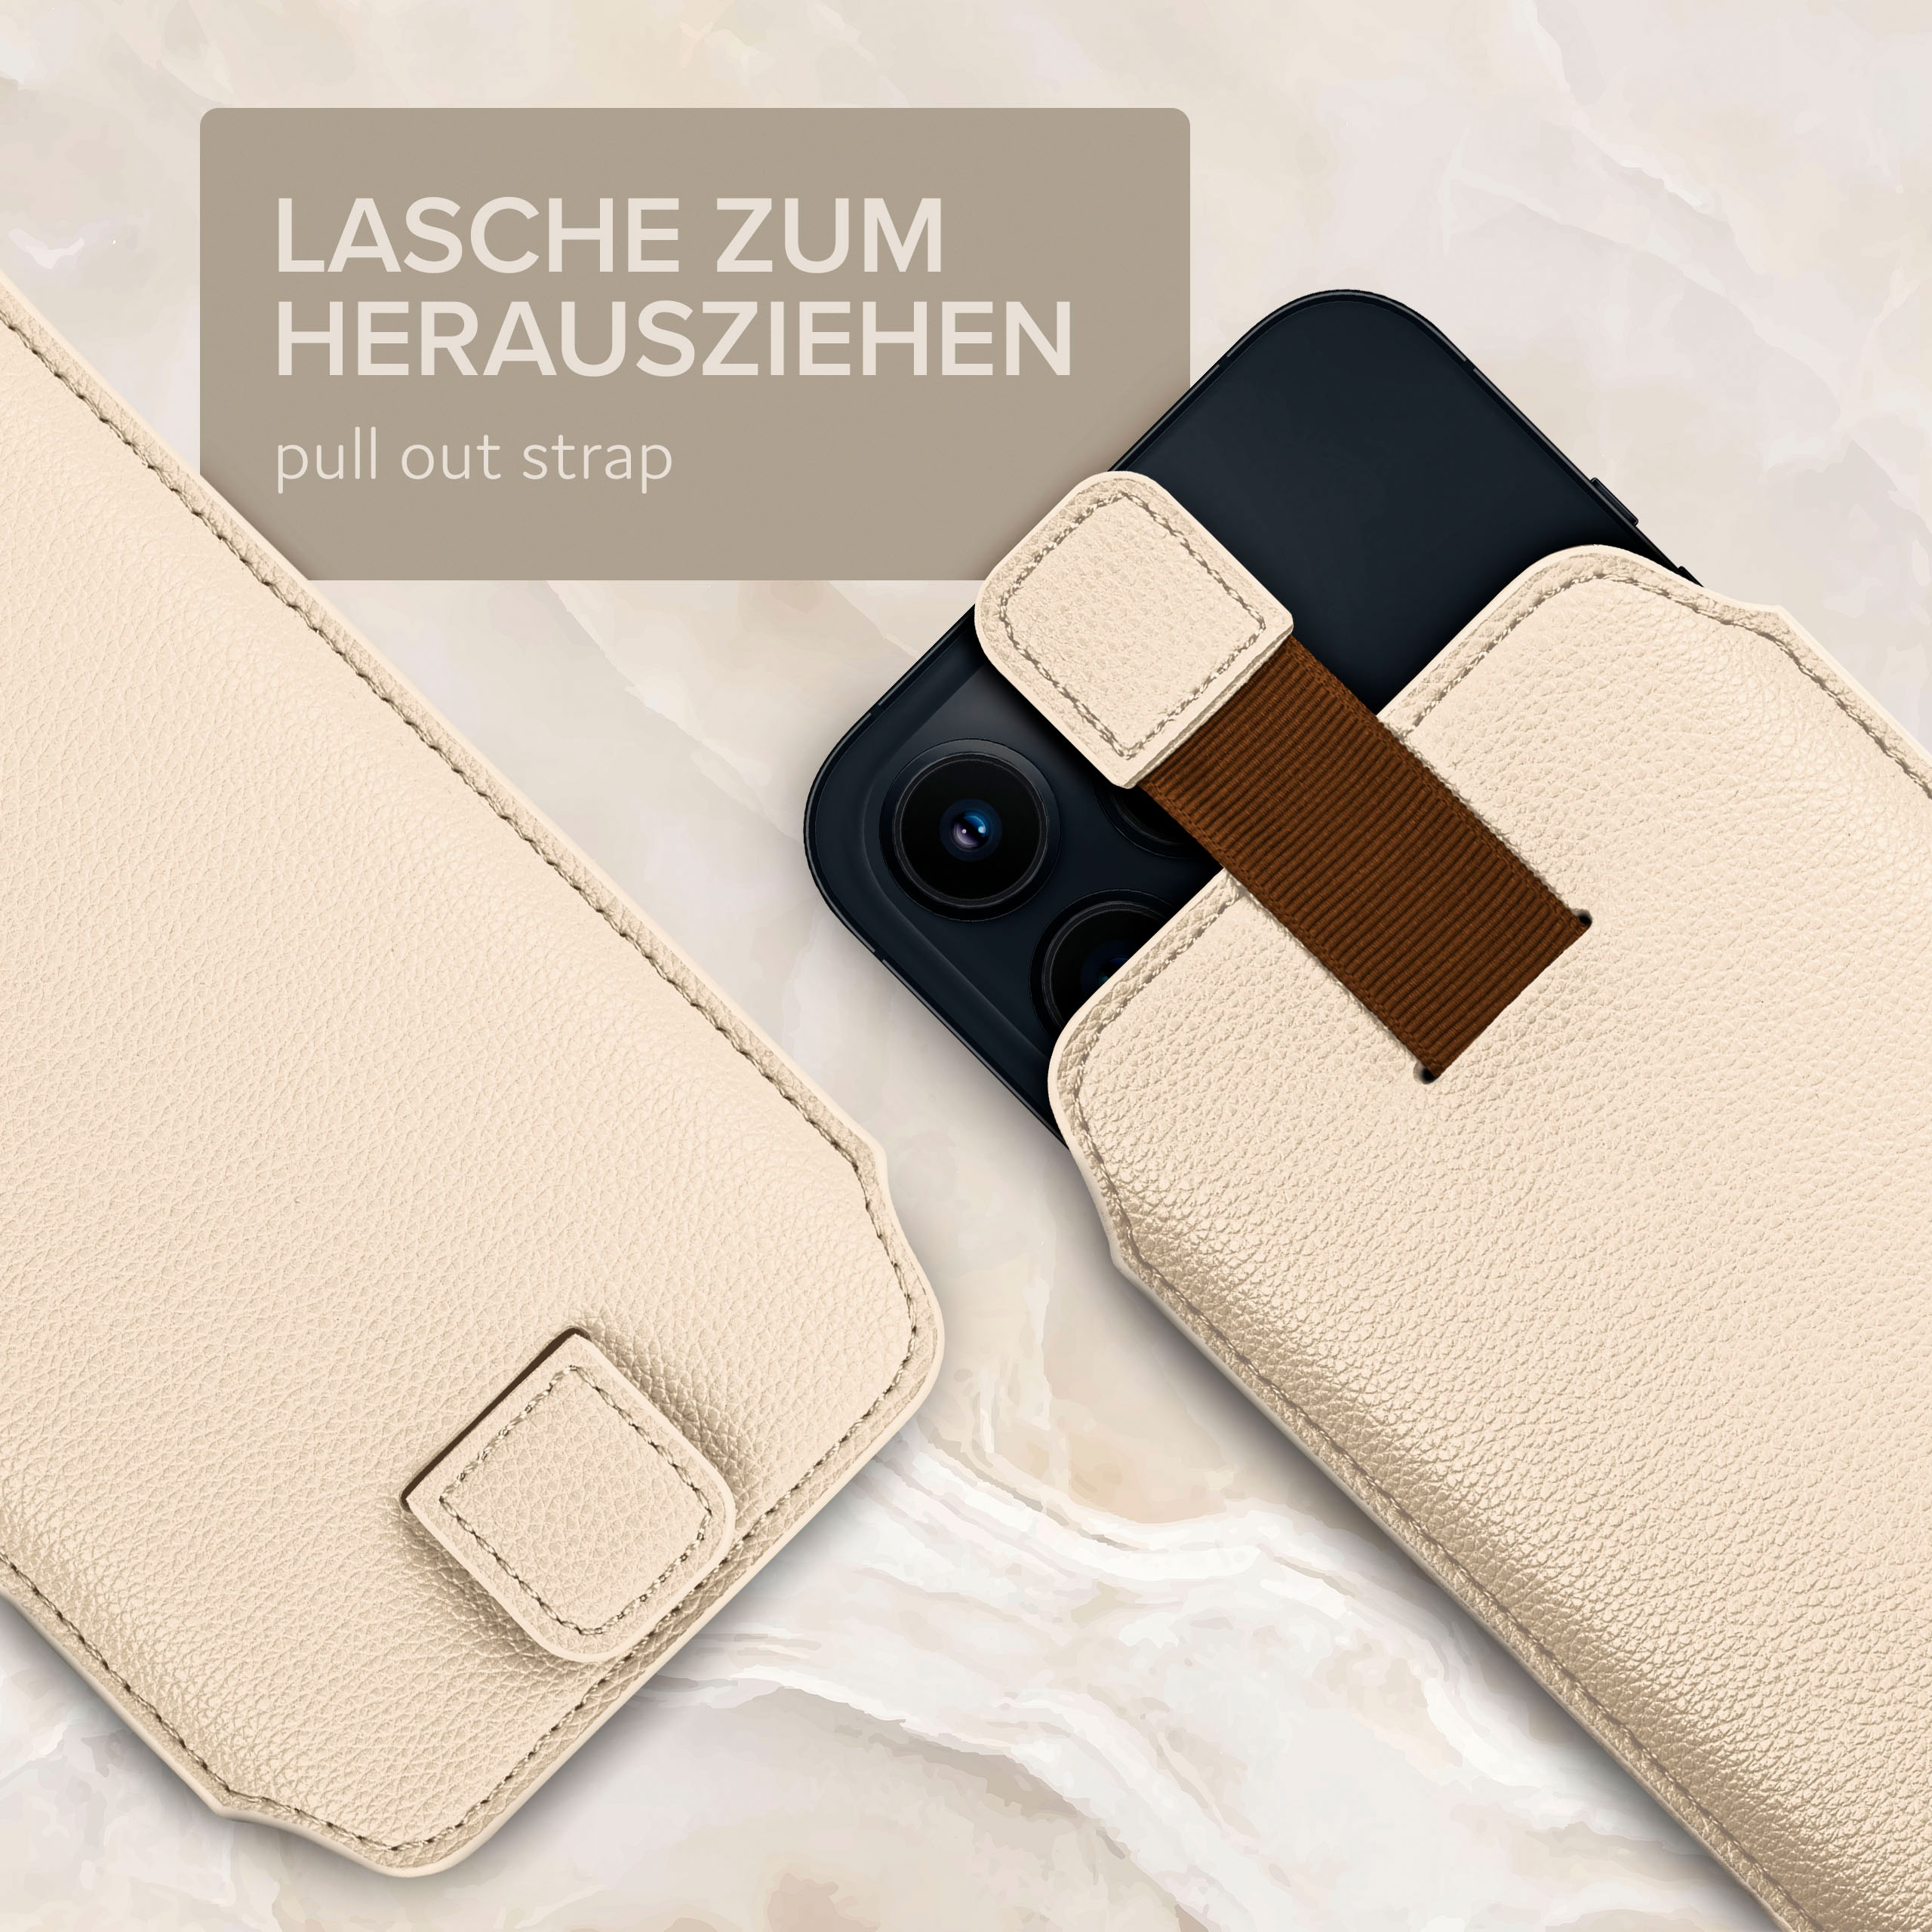 Cover, Xperia ONEFLOW Creme Full Z5 Sony, mit Einsteckhülle Premium, Zuglasche,